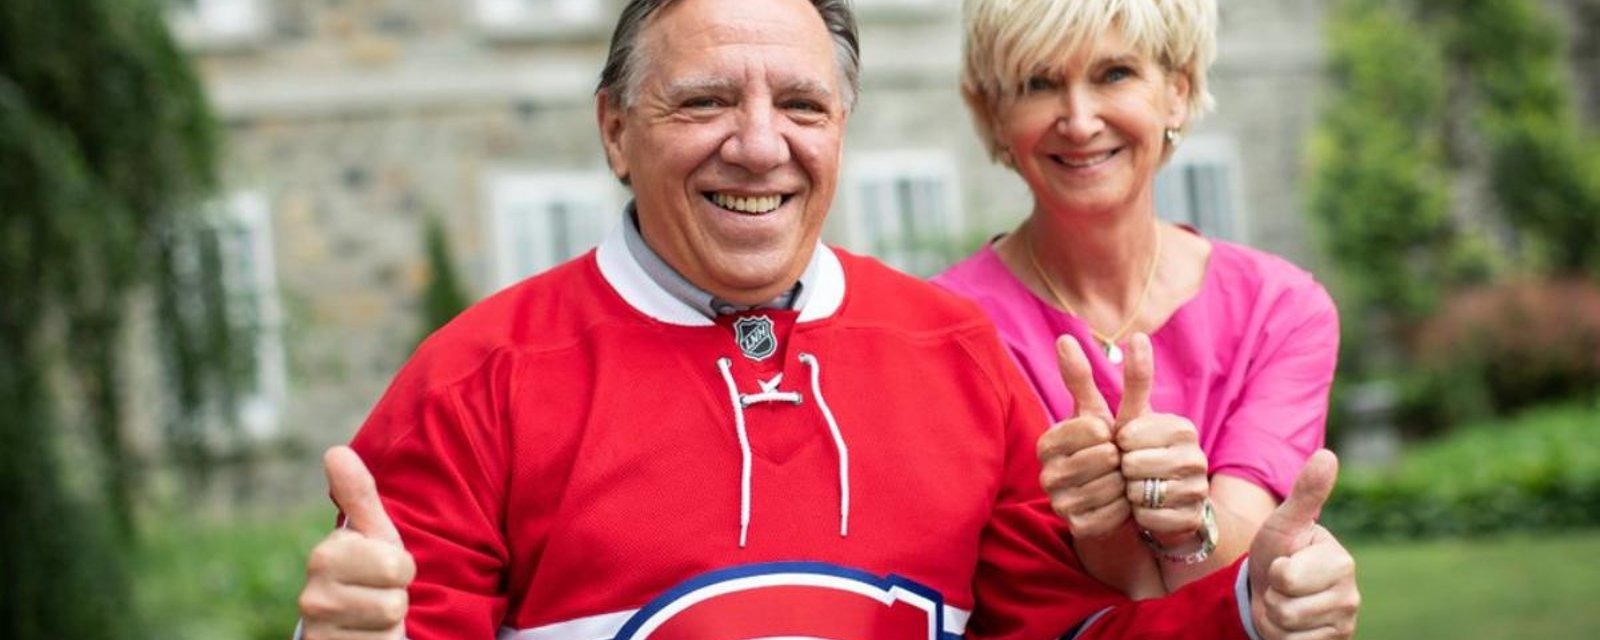 15 personnalités émotives au lendemain de la défaite des Canadiens de Montréal en finale de la coupe Stanley